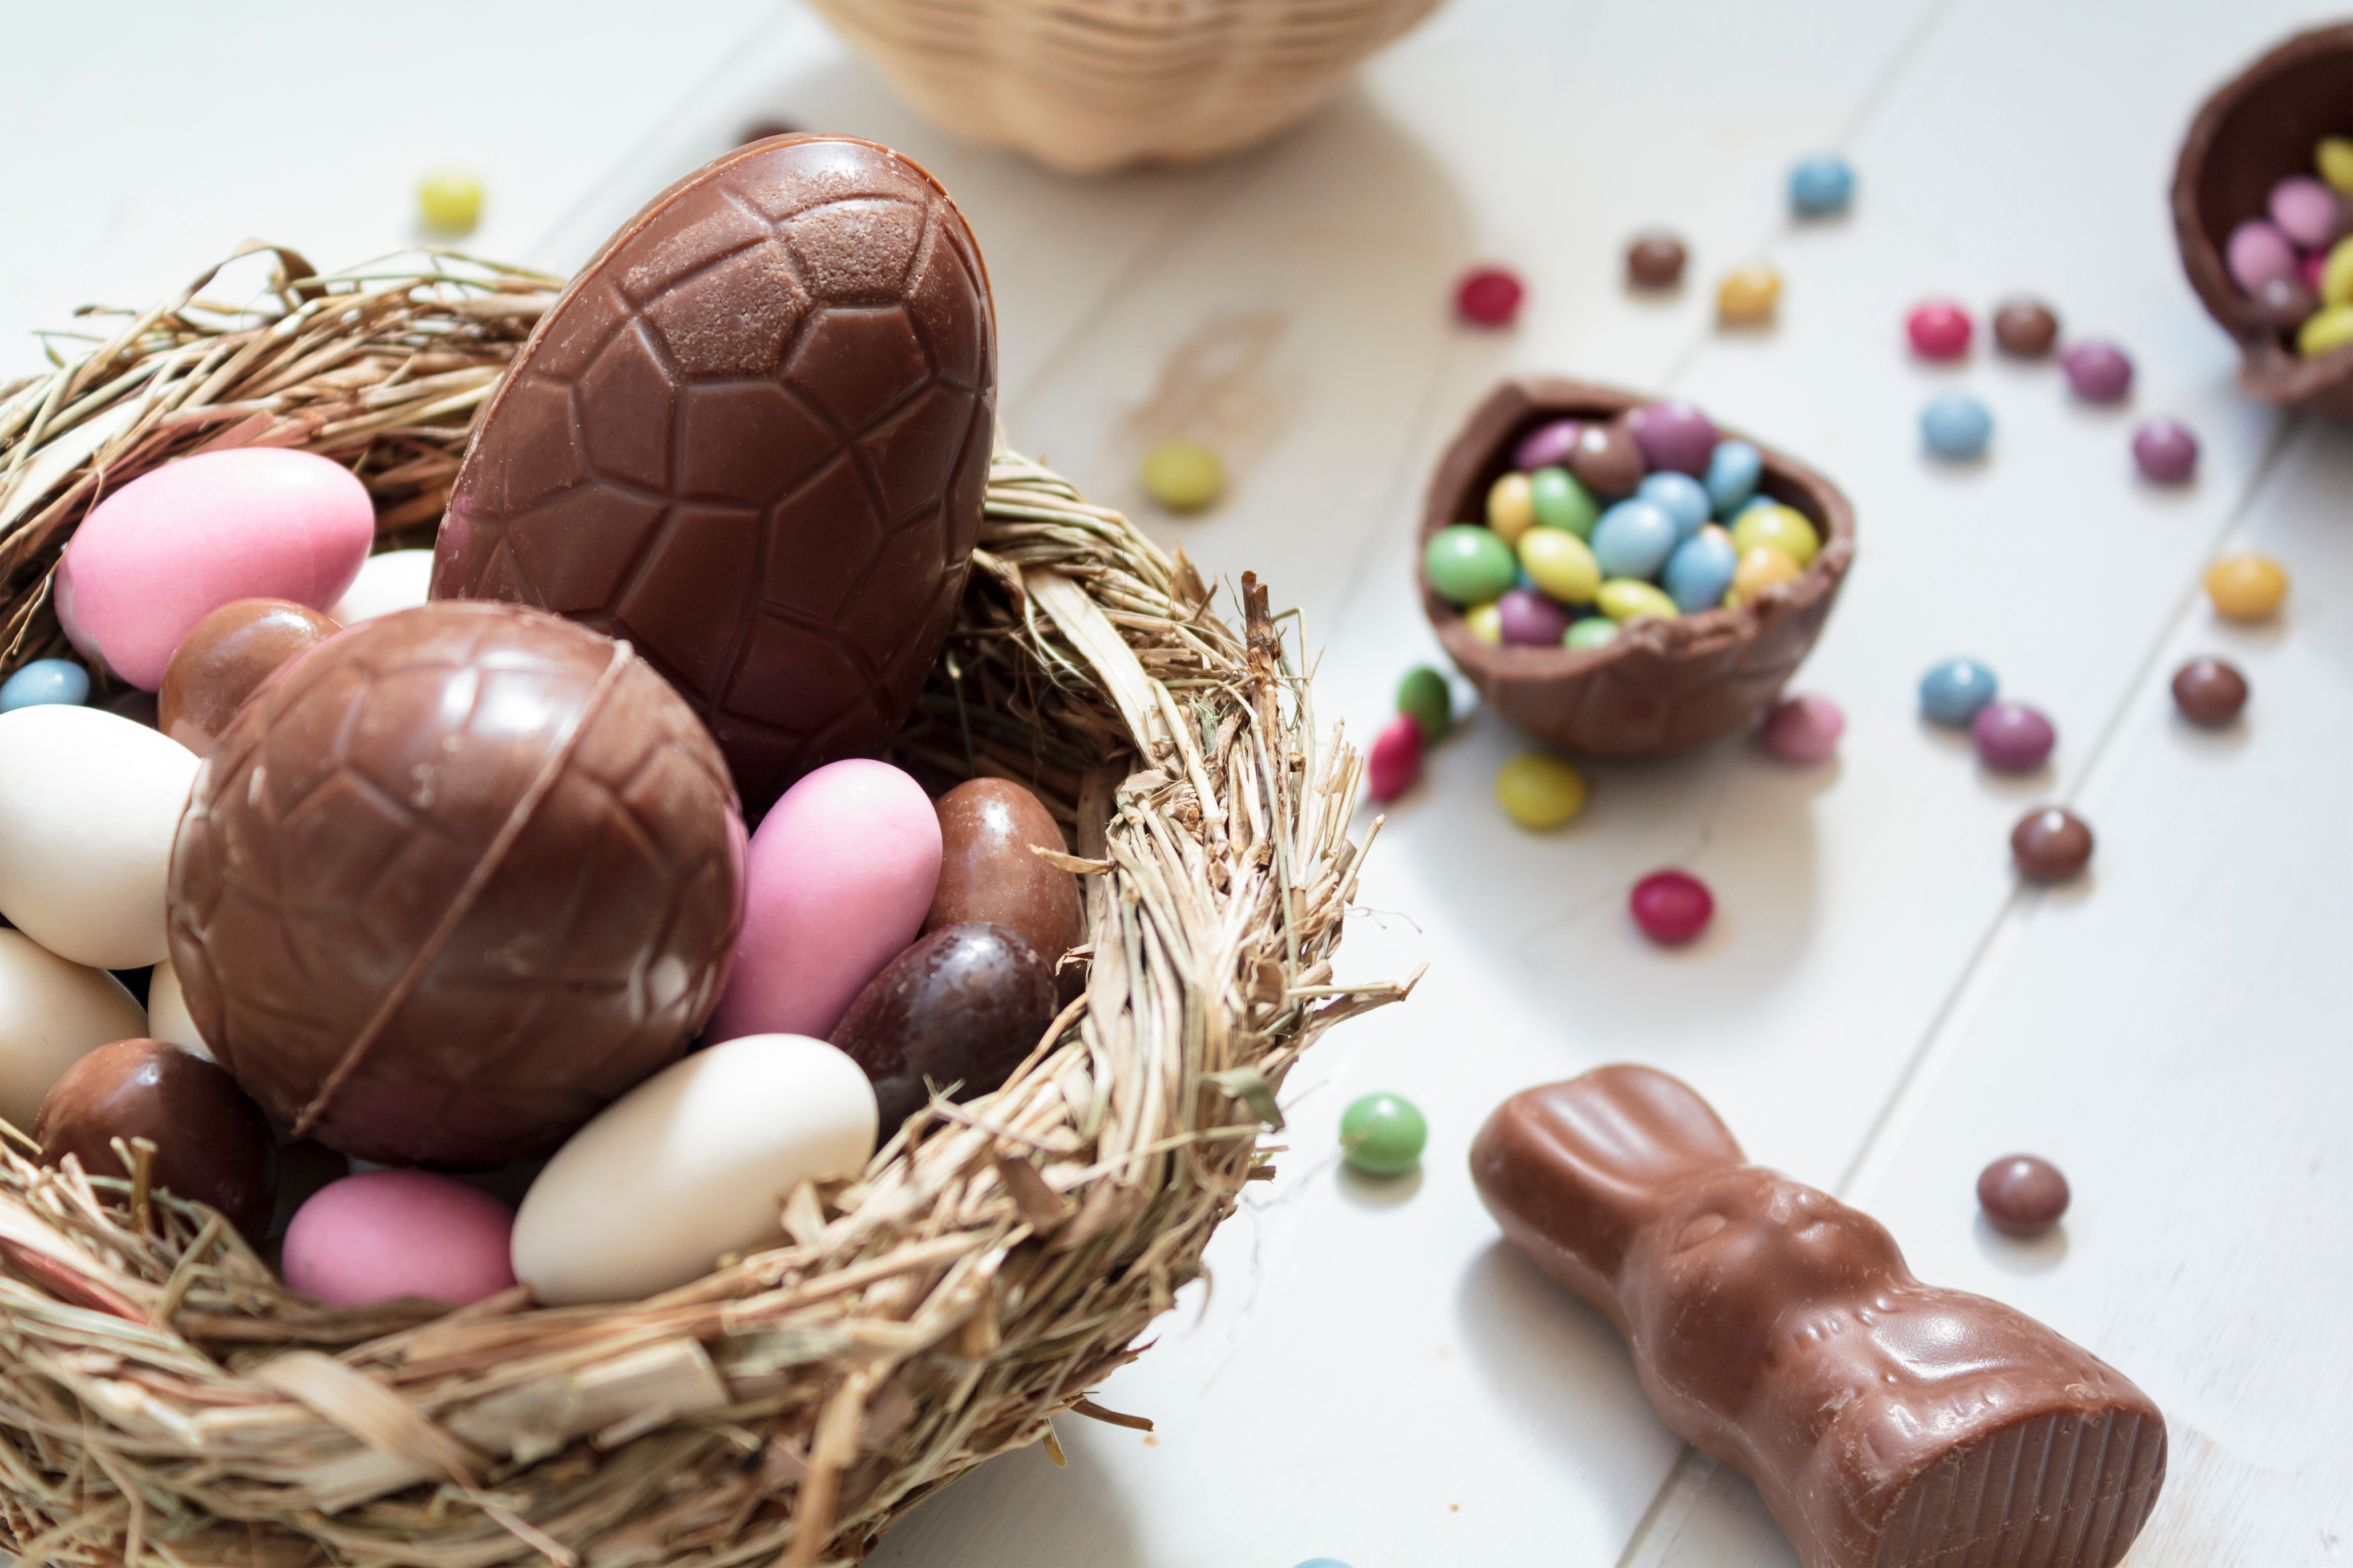     Les chocolats, un indispensable à Pâques

